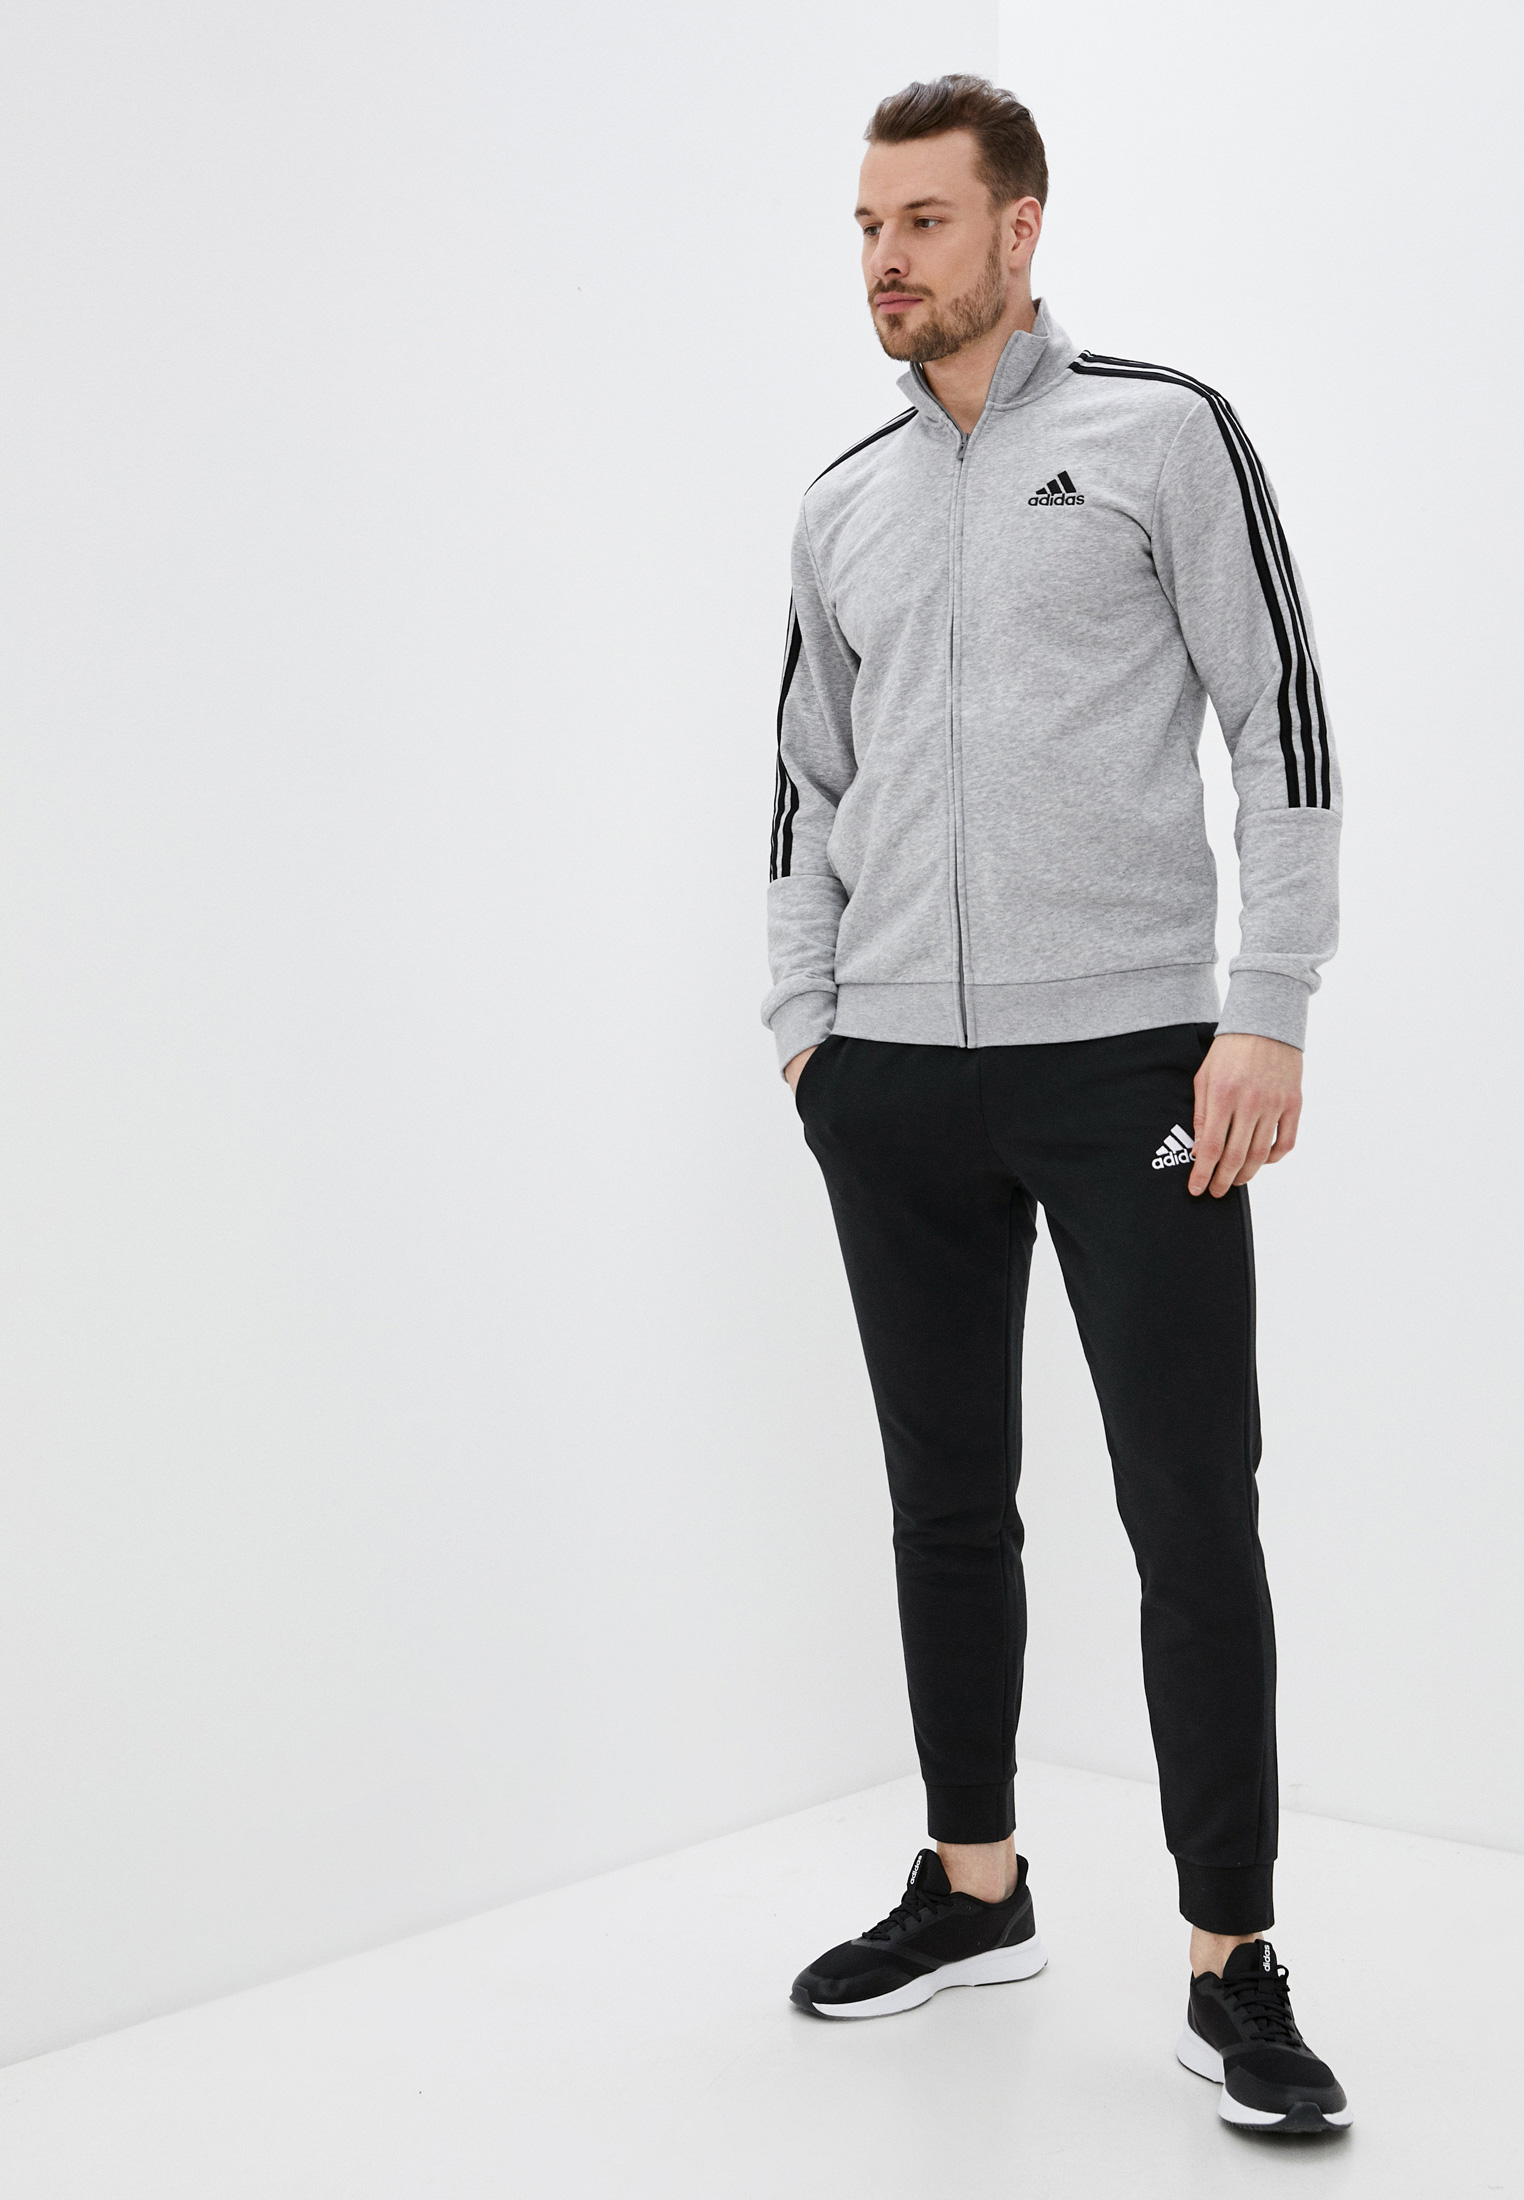 Спортивный костюм мужской Adidas (Адидас) GK9975 купить за 7999 руб.